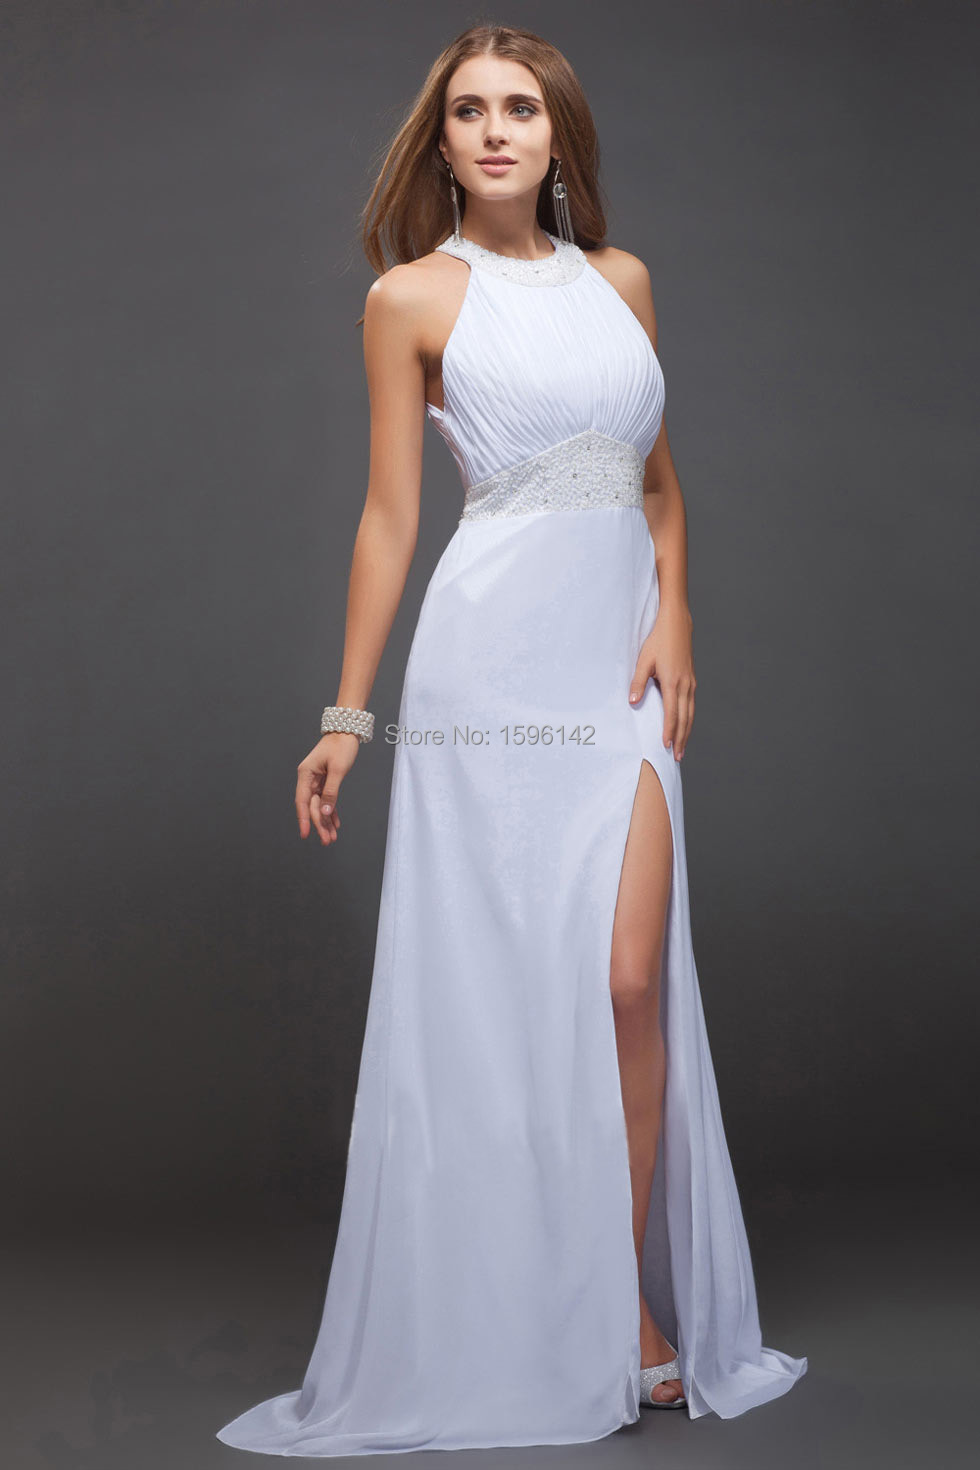 fancy white dress